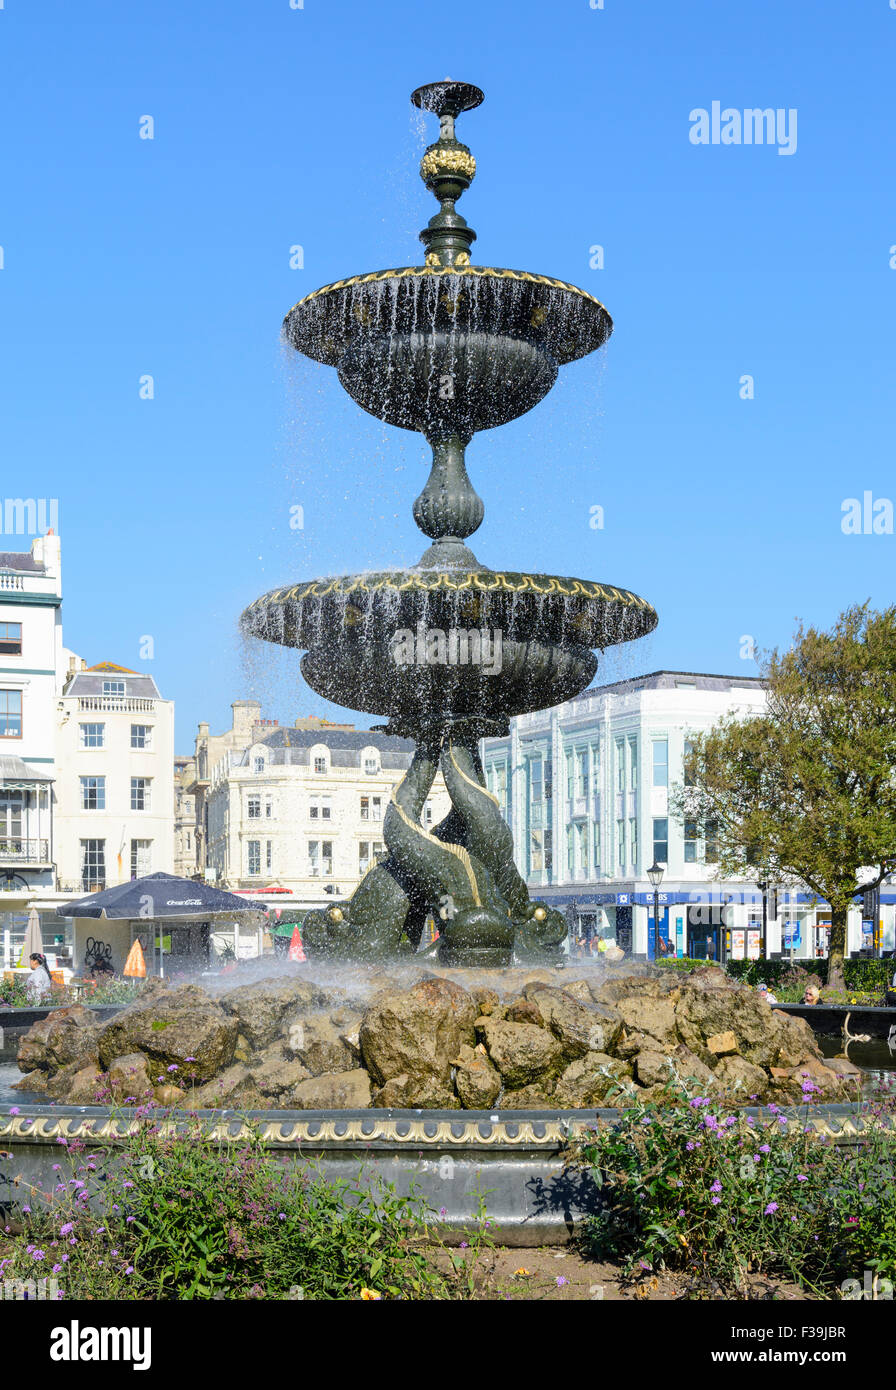 Victoria Fountain in Steine Gardens, Old Steine, Brighton, East Sussex, England, UK. Stock Photo